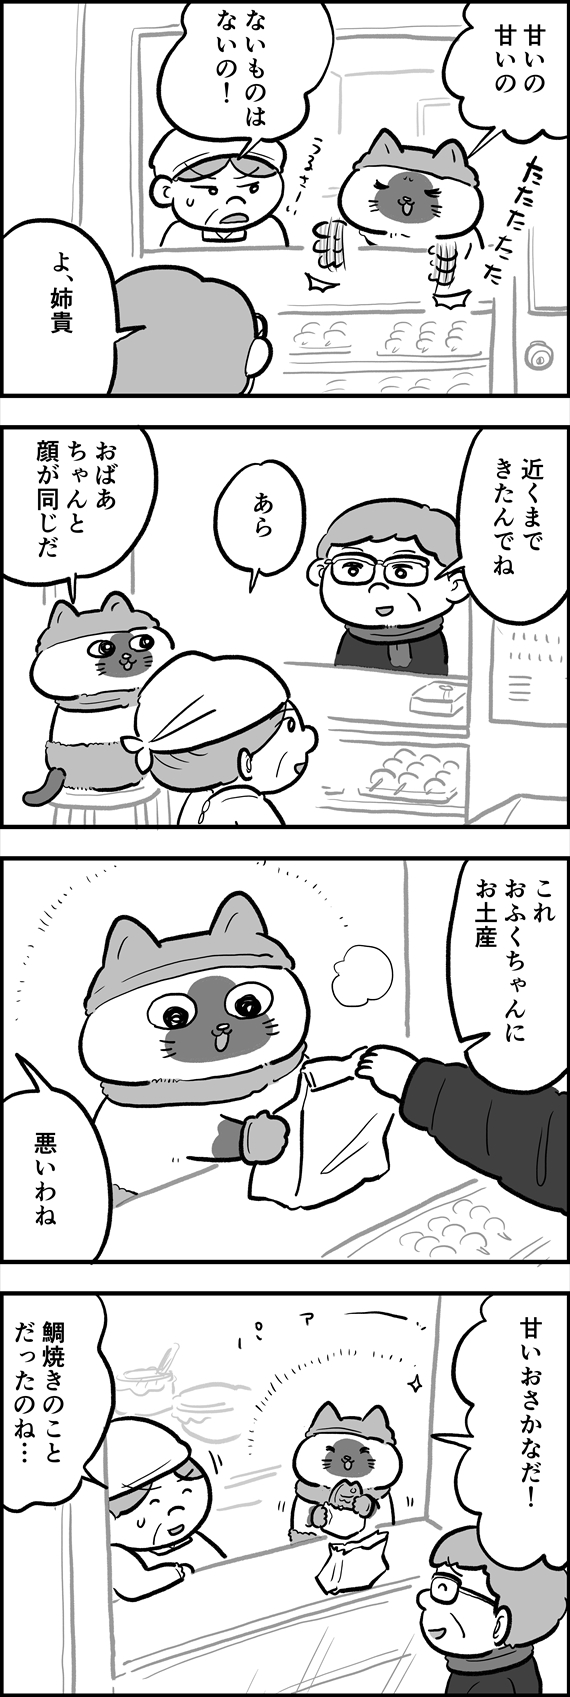 ofukuchan_manga_15_2_R.jpg